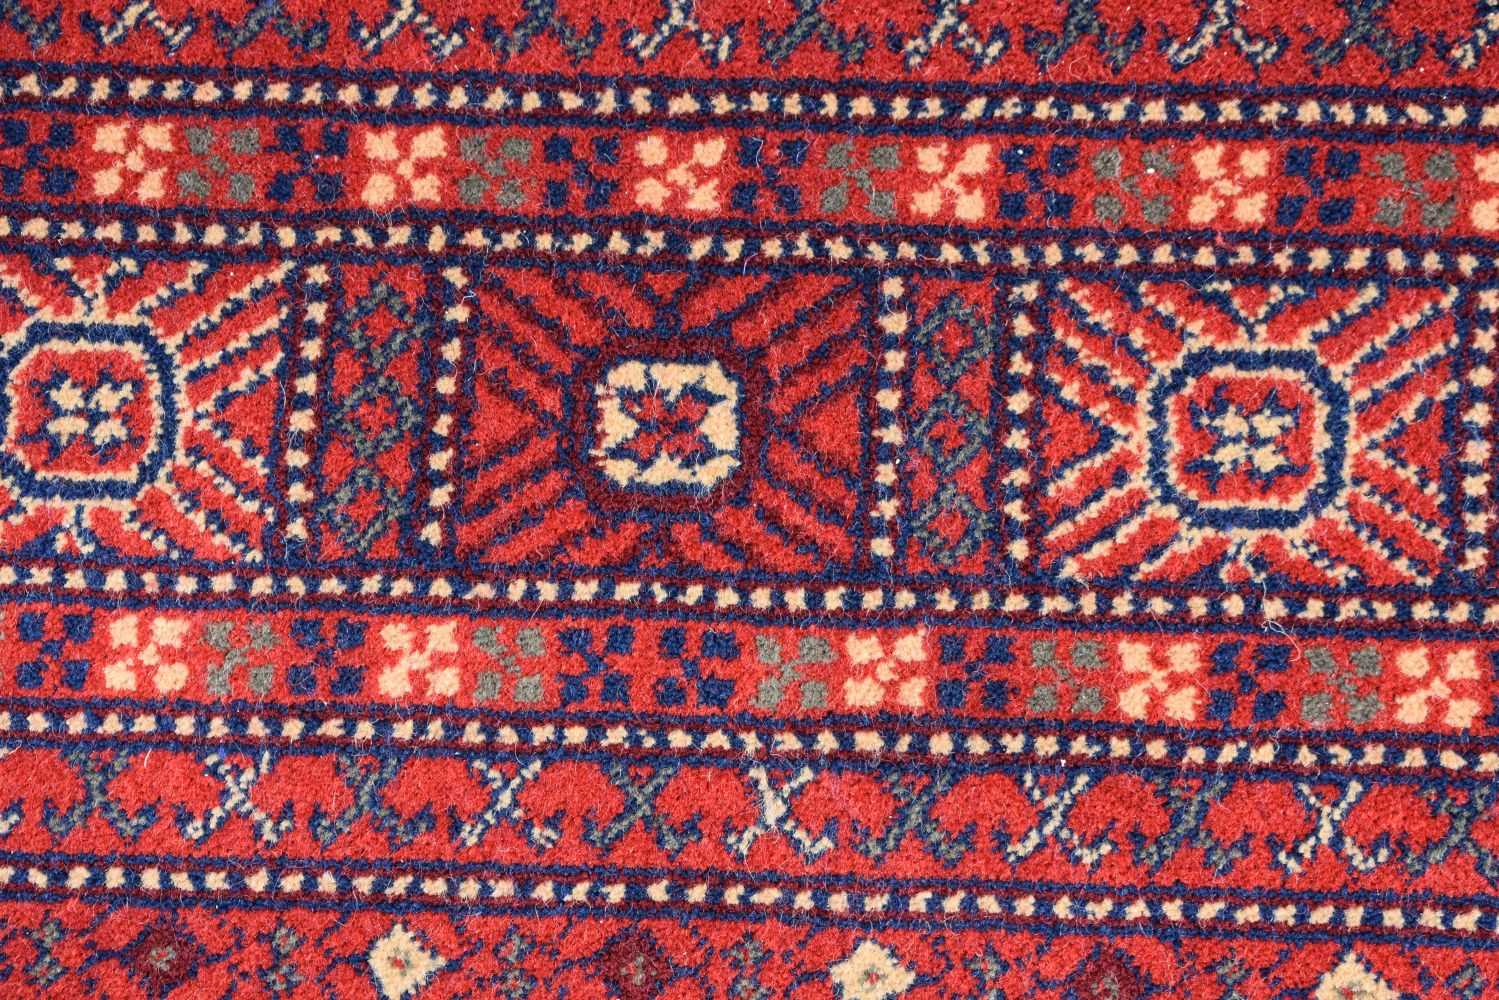 A Turkish Kirman rug 297 x 201 cm - Image 8 of 16